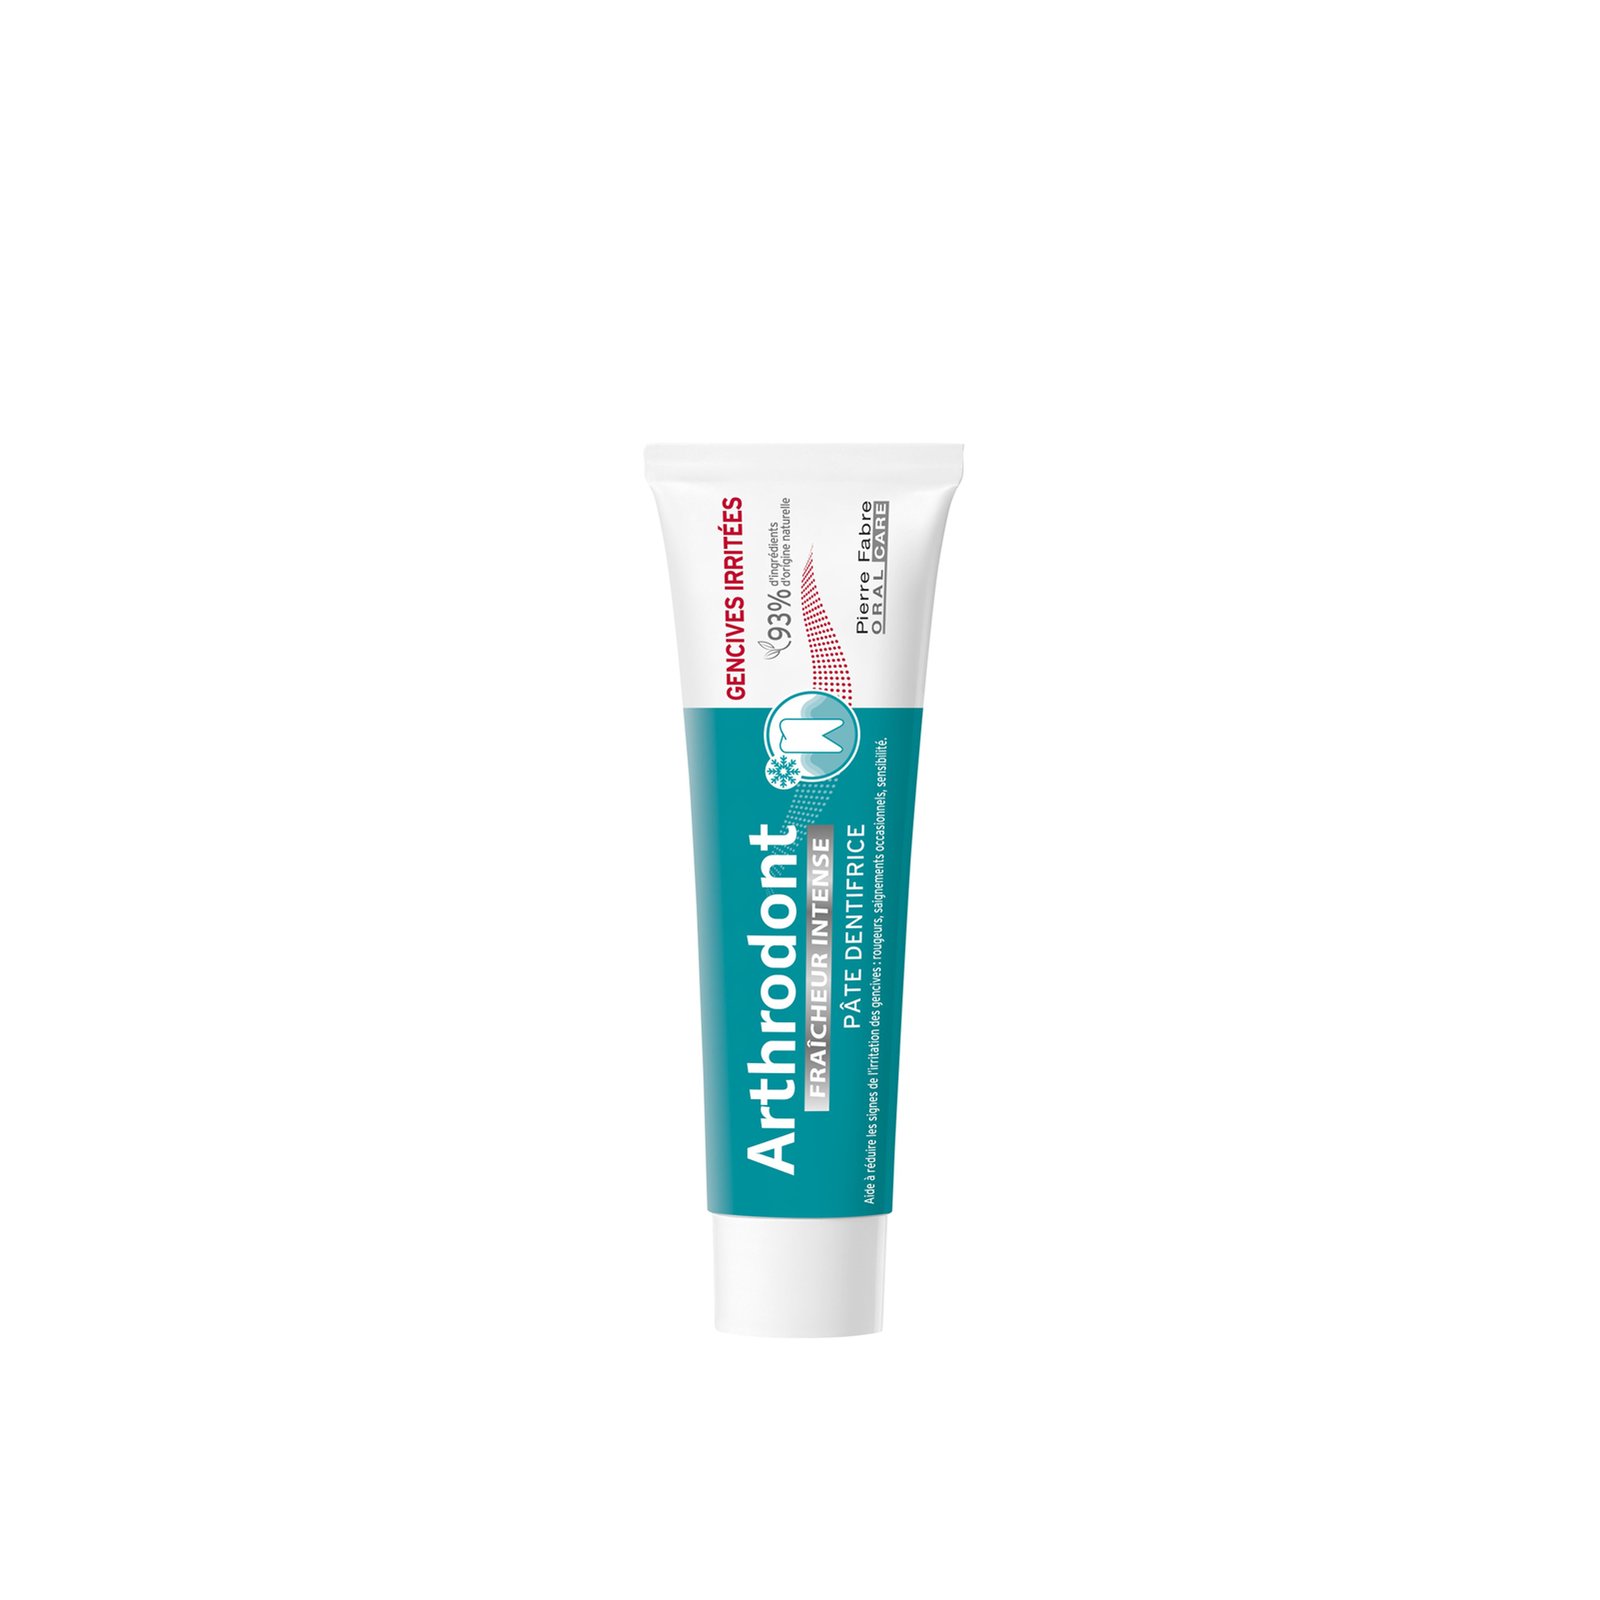 Arthrodont Intense Freshness Toothpaste 75ml